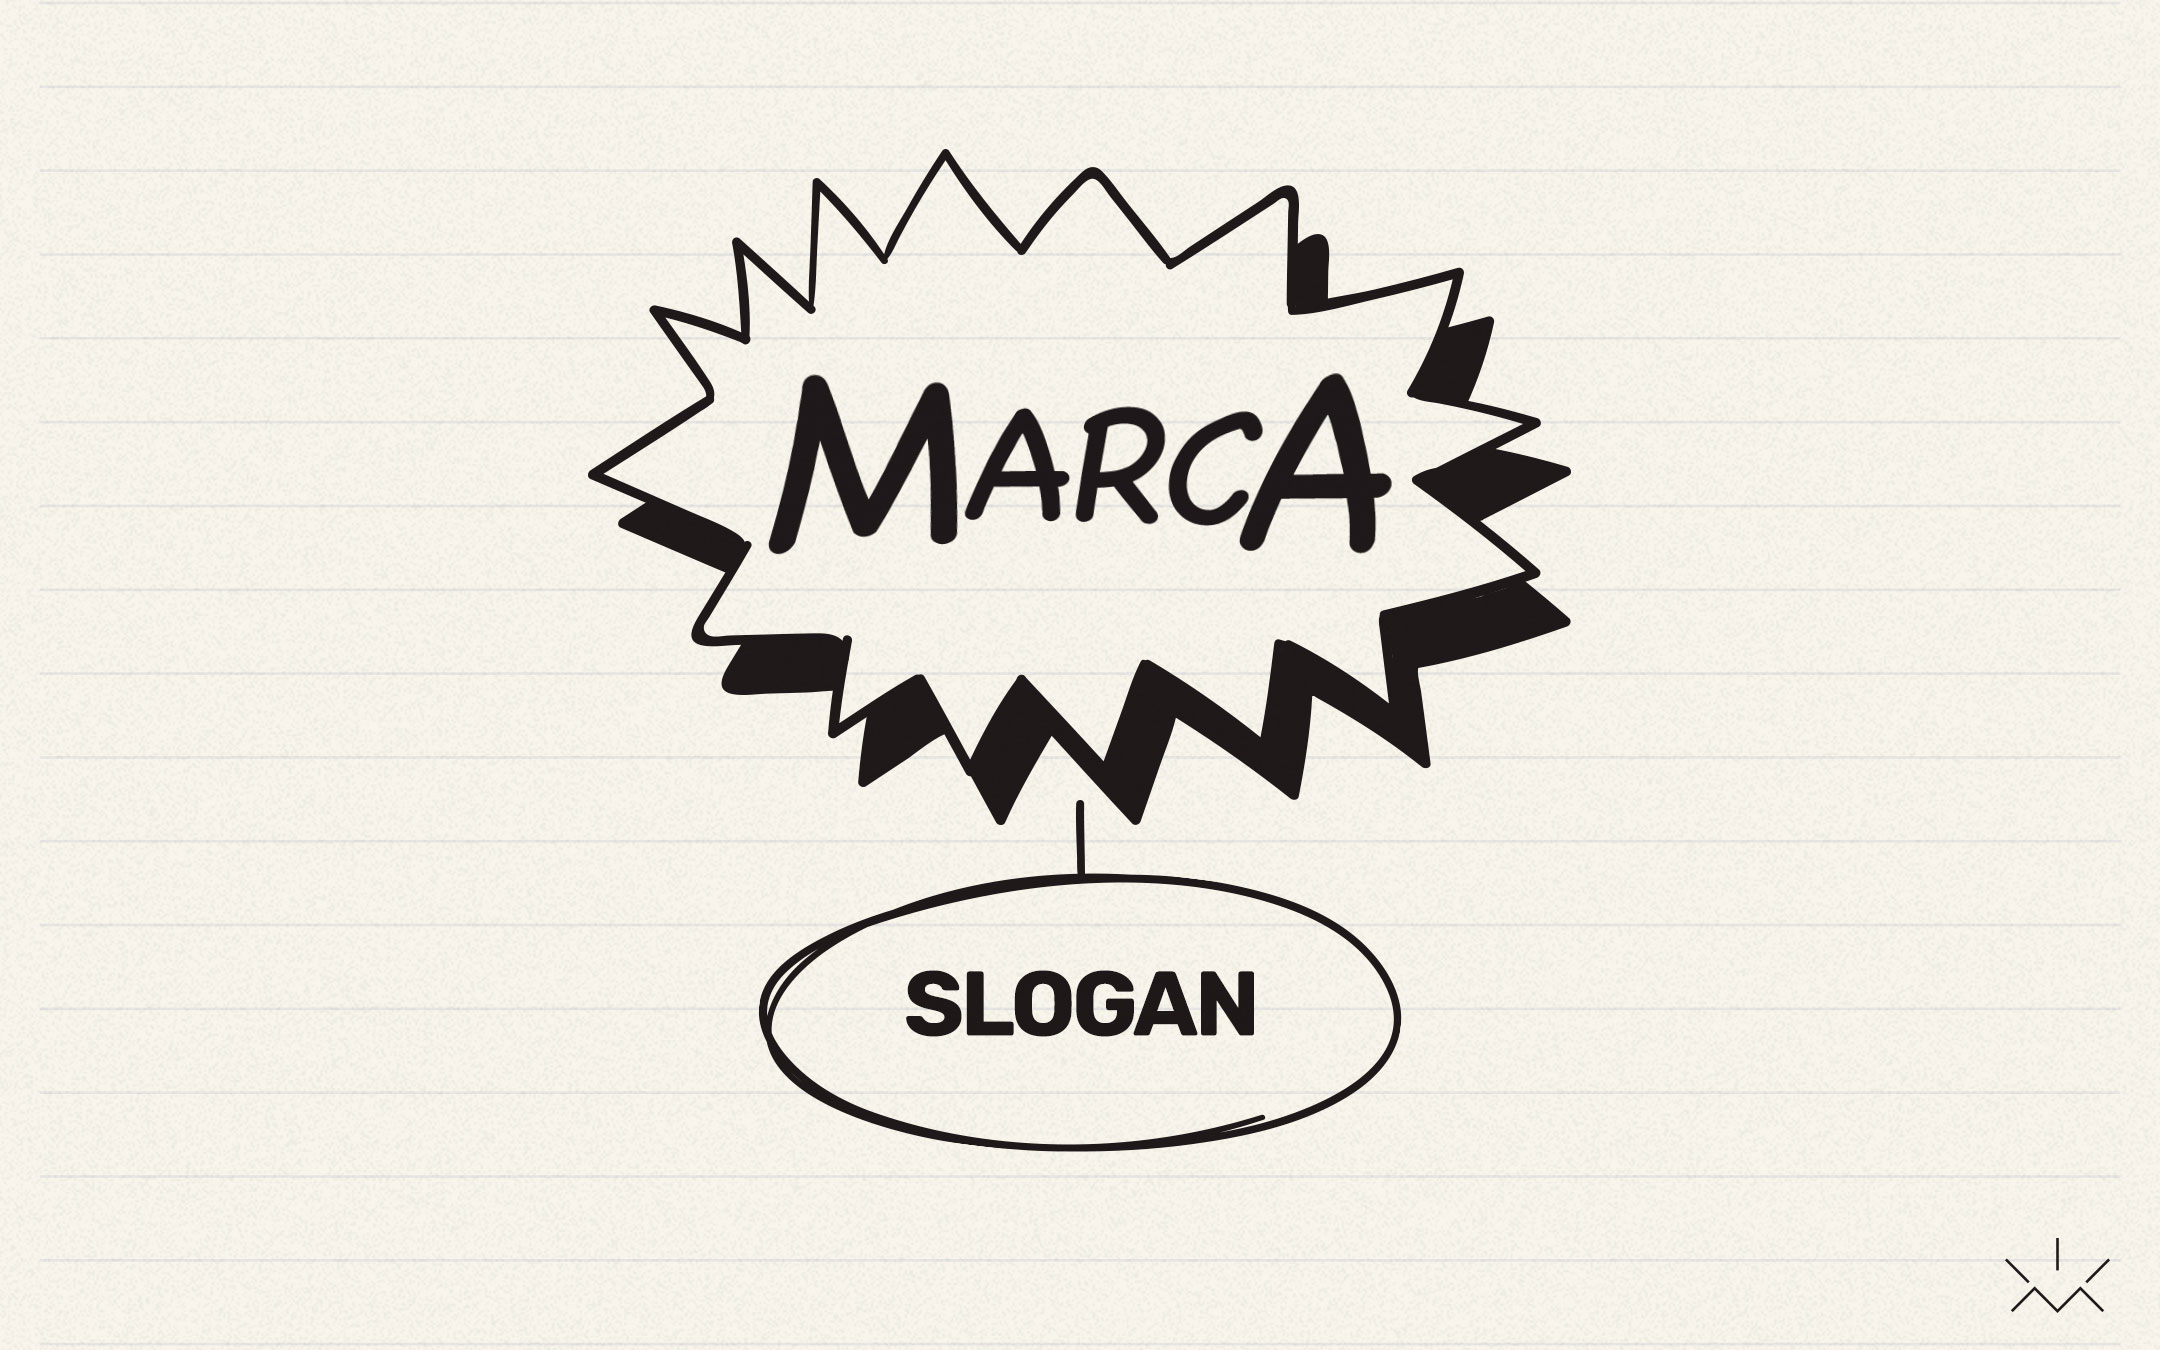 Ilustração de um balão de diálogo com a palavra Marca e abaixo a palavra slogan, ilustrando o tema Qual a importância do slogan?